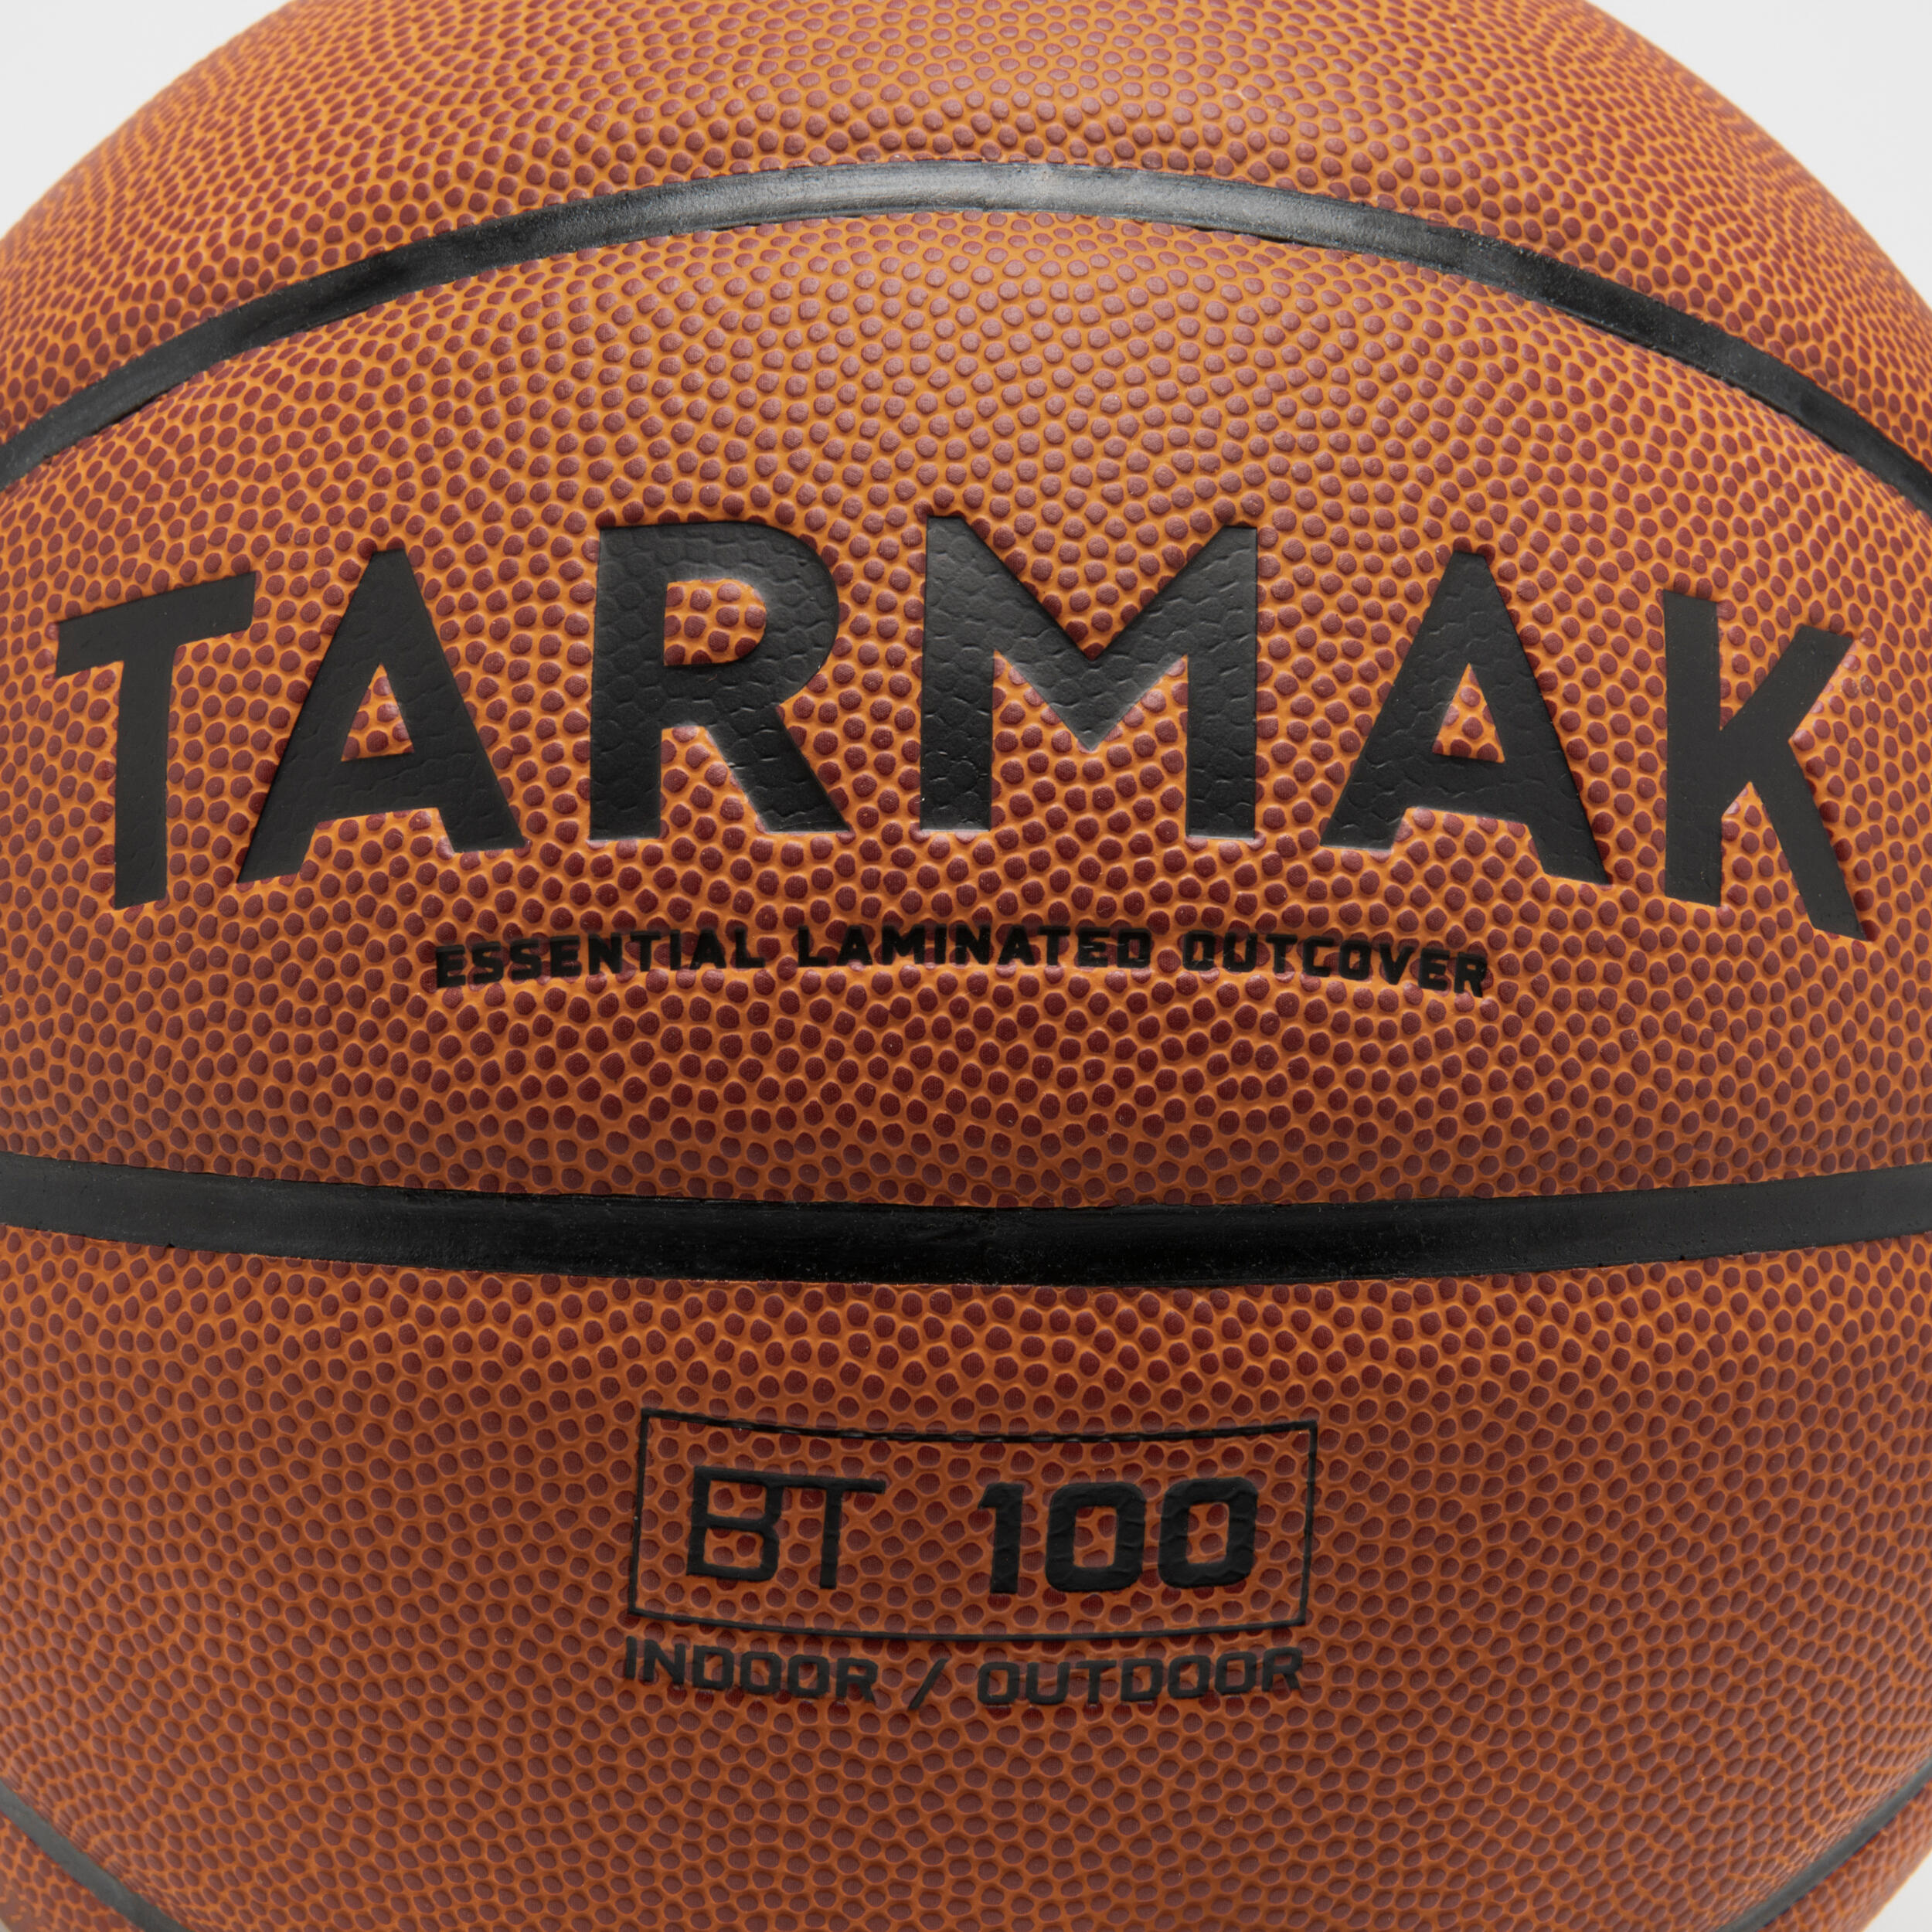 BT100 Kids' Size 5 Beginner Basketball, Under Age 10 - Orange 3/5